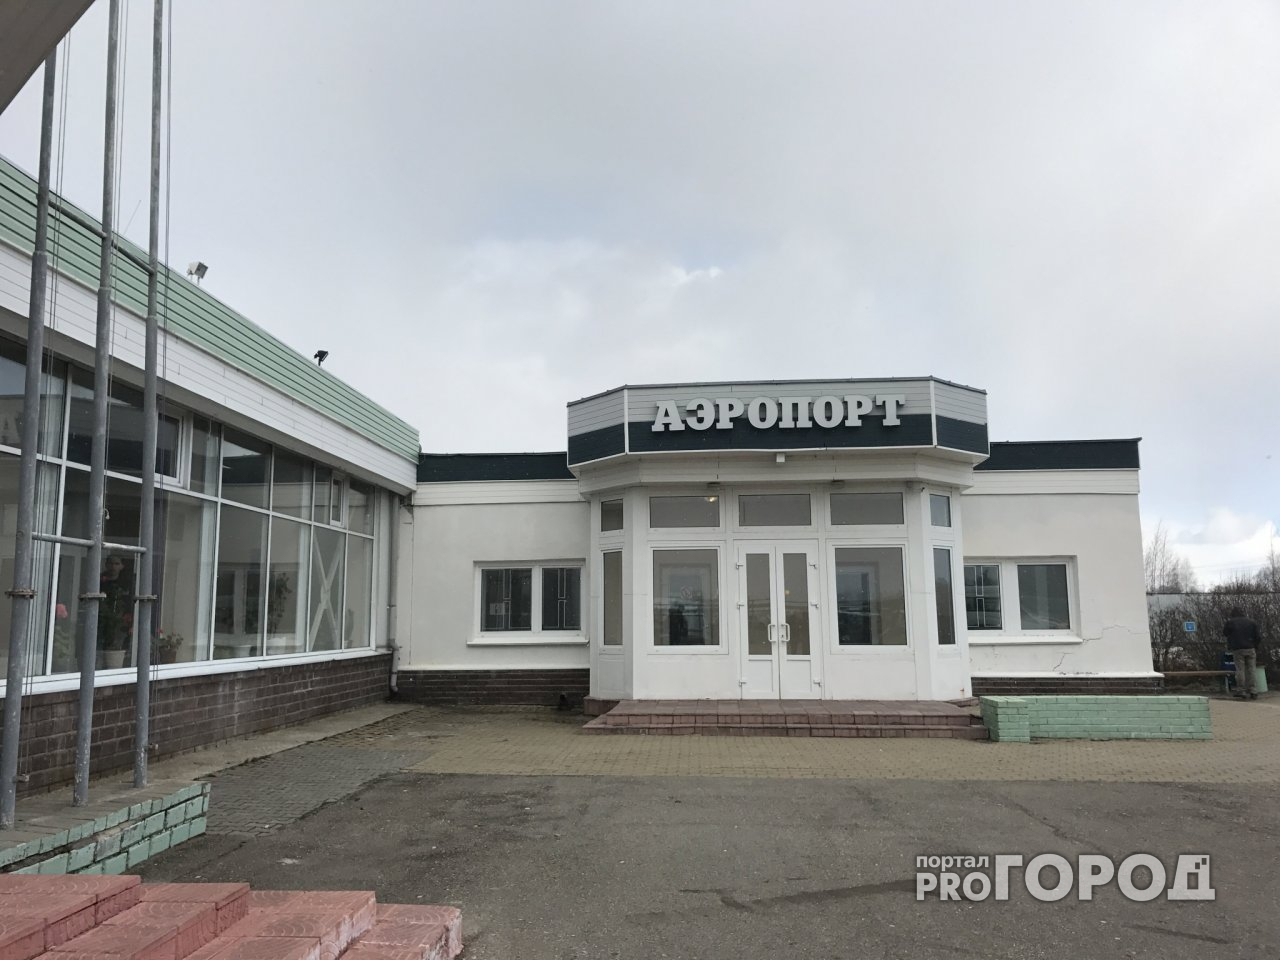 Первый рейс в «Туношне»: теперь ярославцы смогут летать в Казань